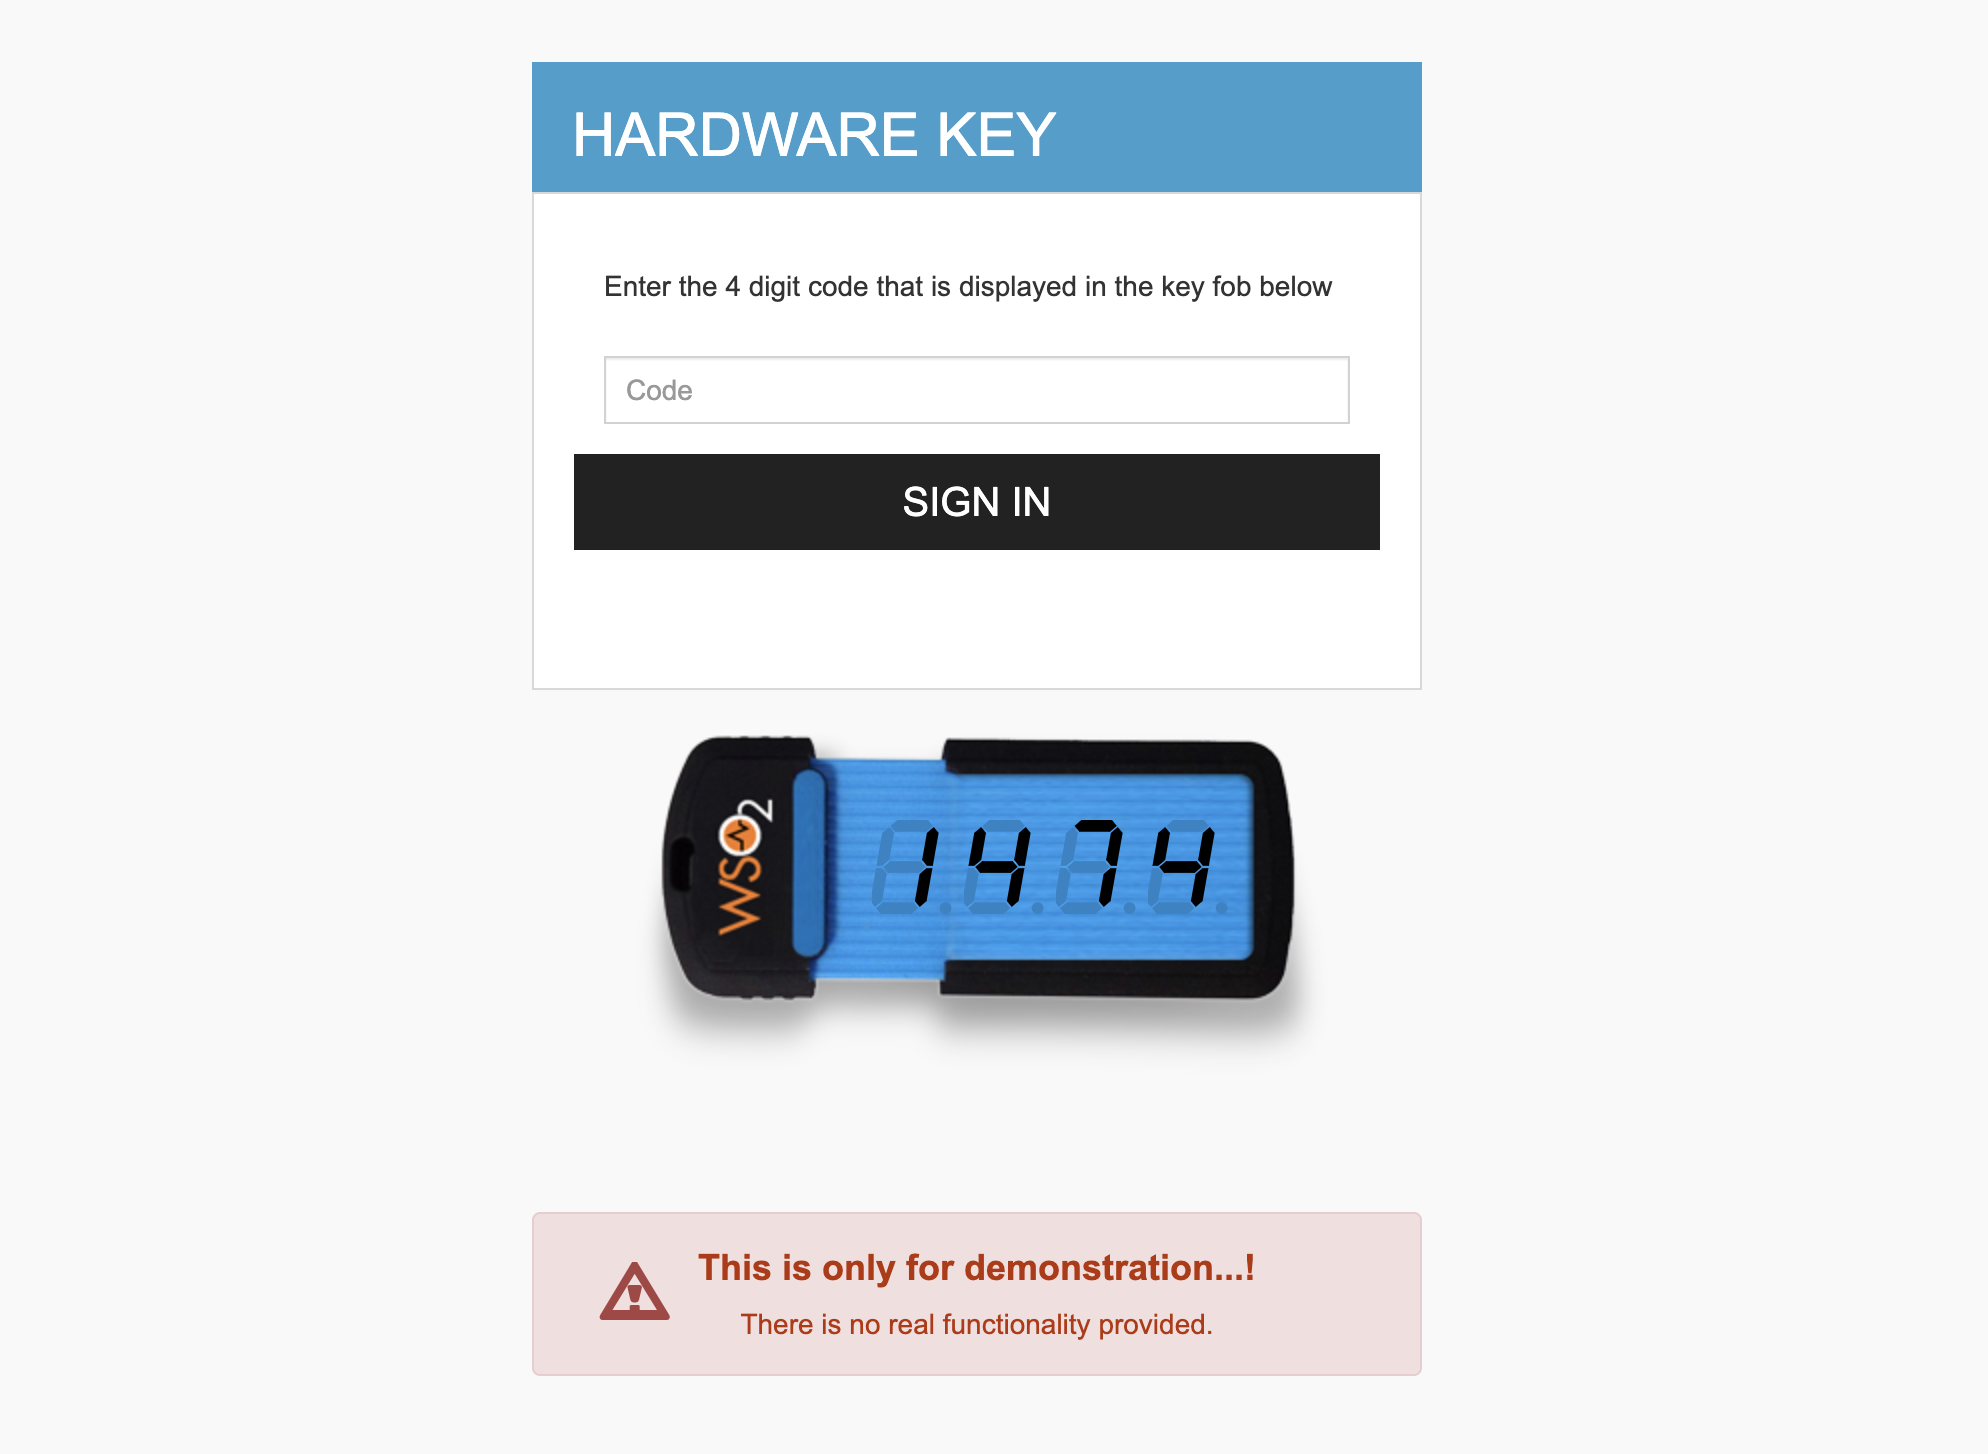 Enter the hardware key